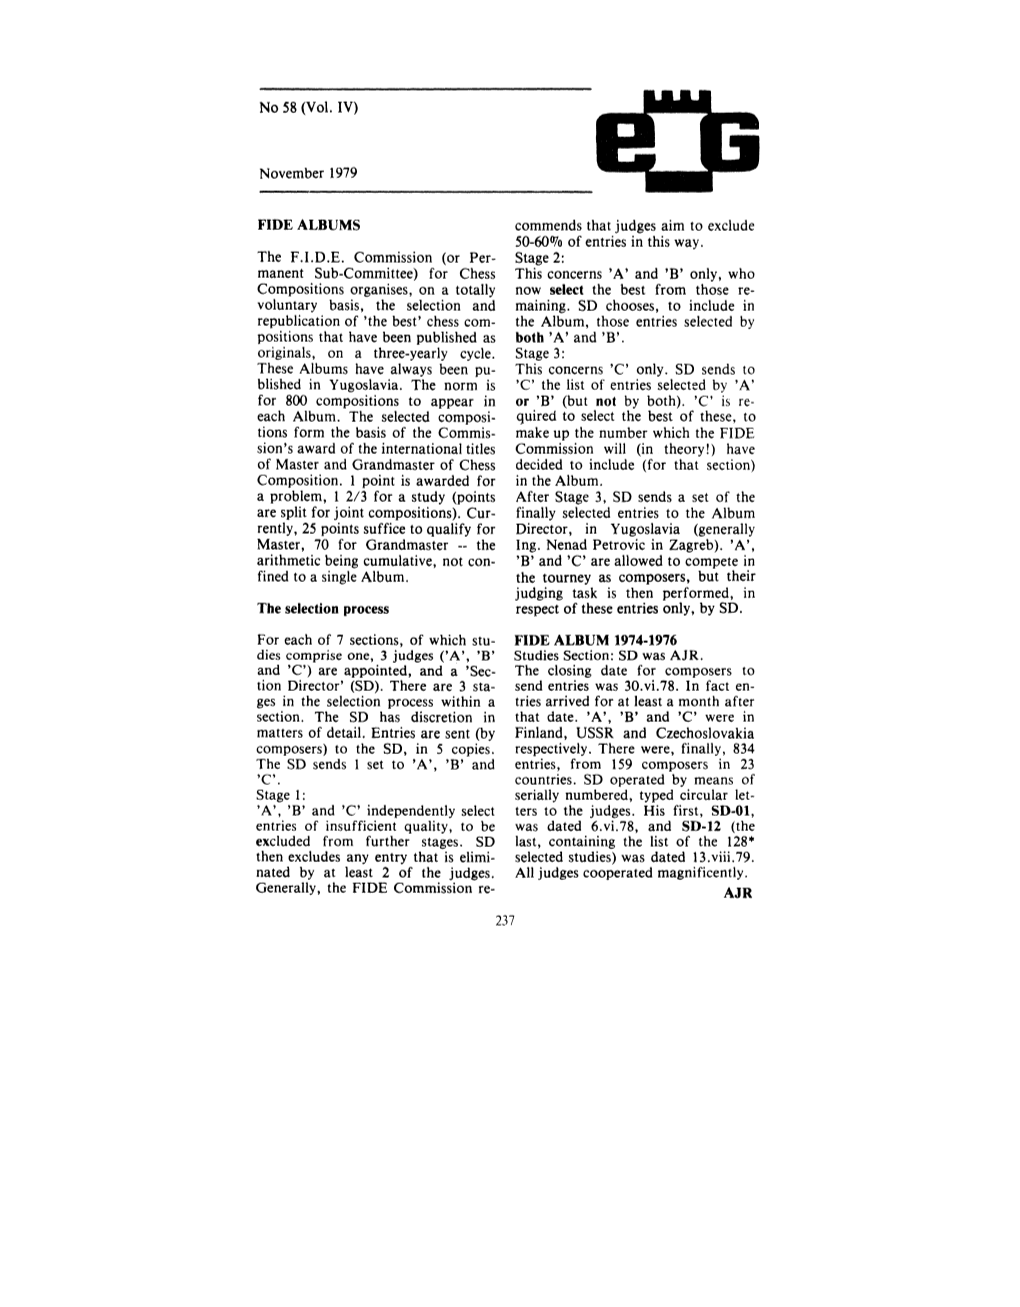 No 58 (Vol. IV) November 1979 FIDE ALBUMS the FIDE